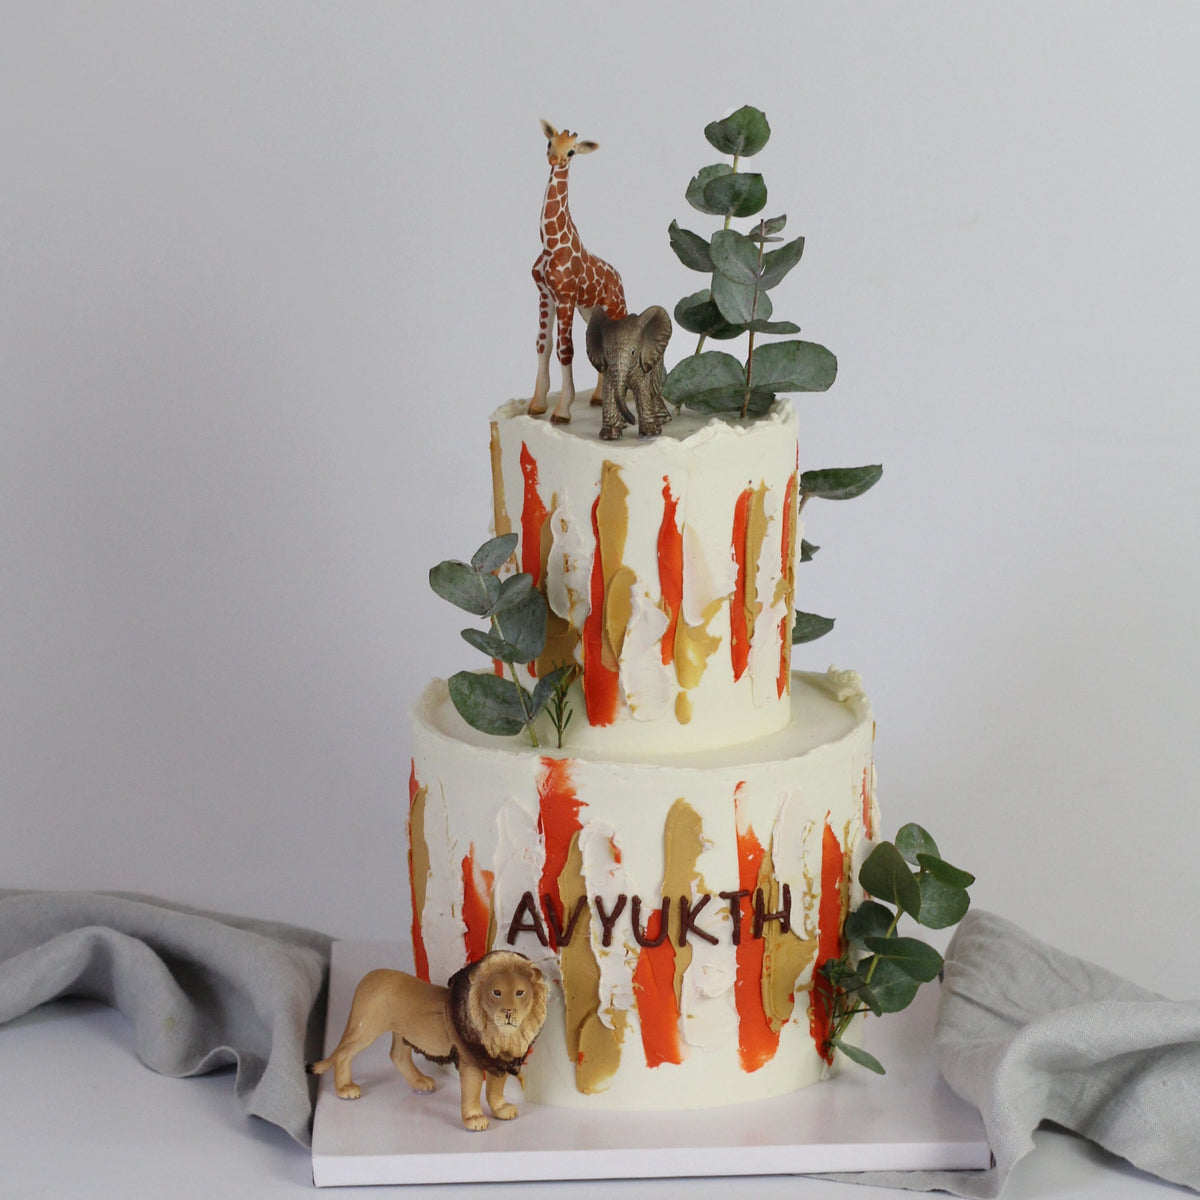 Der Safari Tour Cake – perfekt für alle, die weg wollen! Geschmückt mit Pinselstrichen, Blättern und einer Figur.